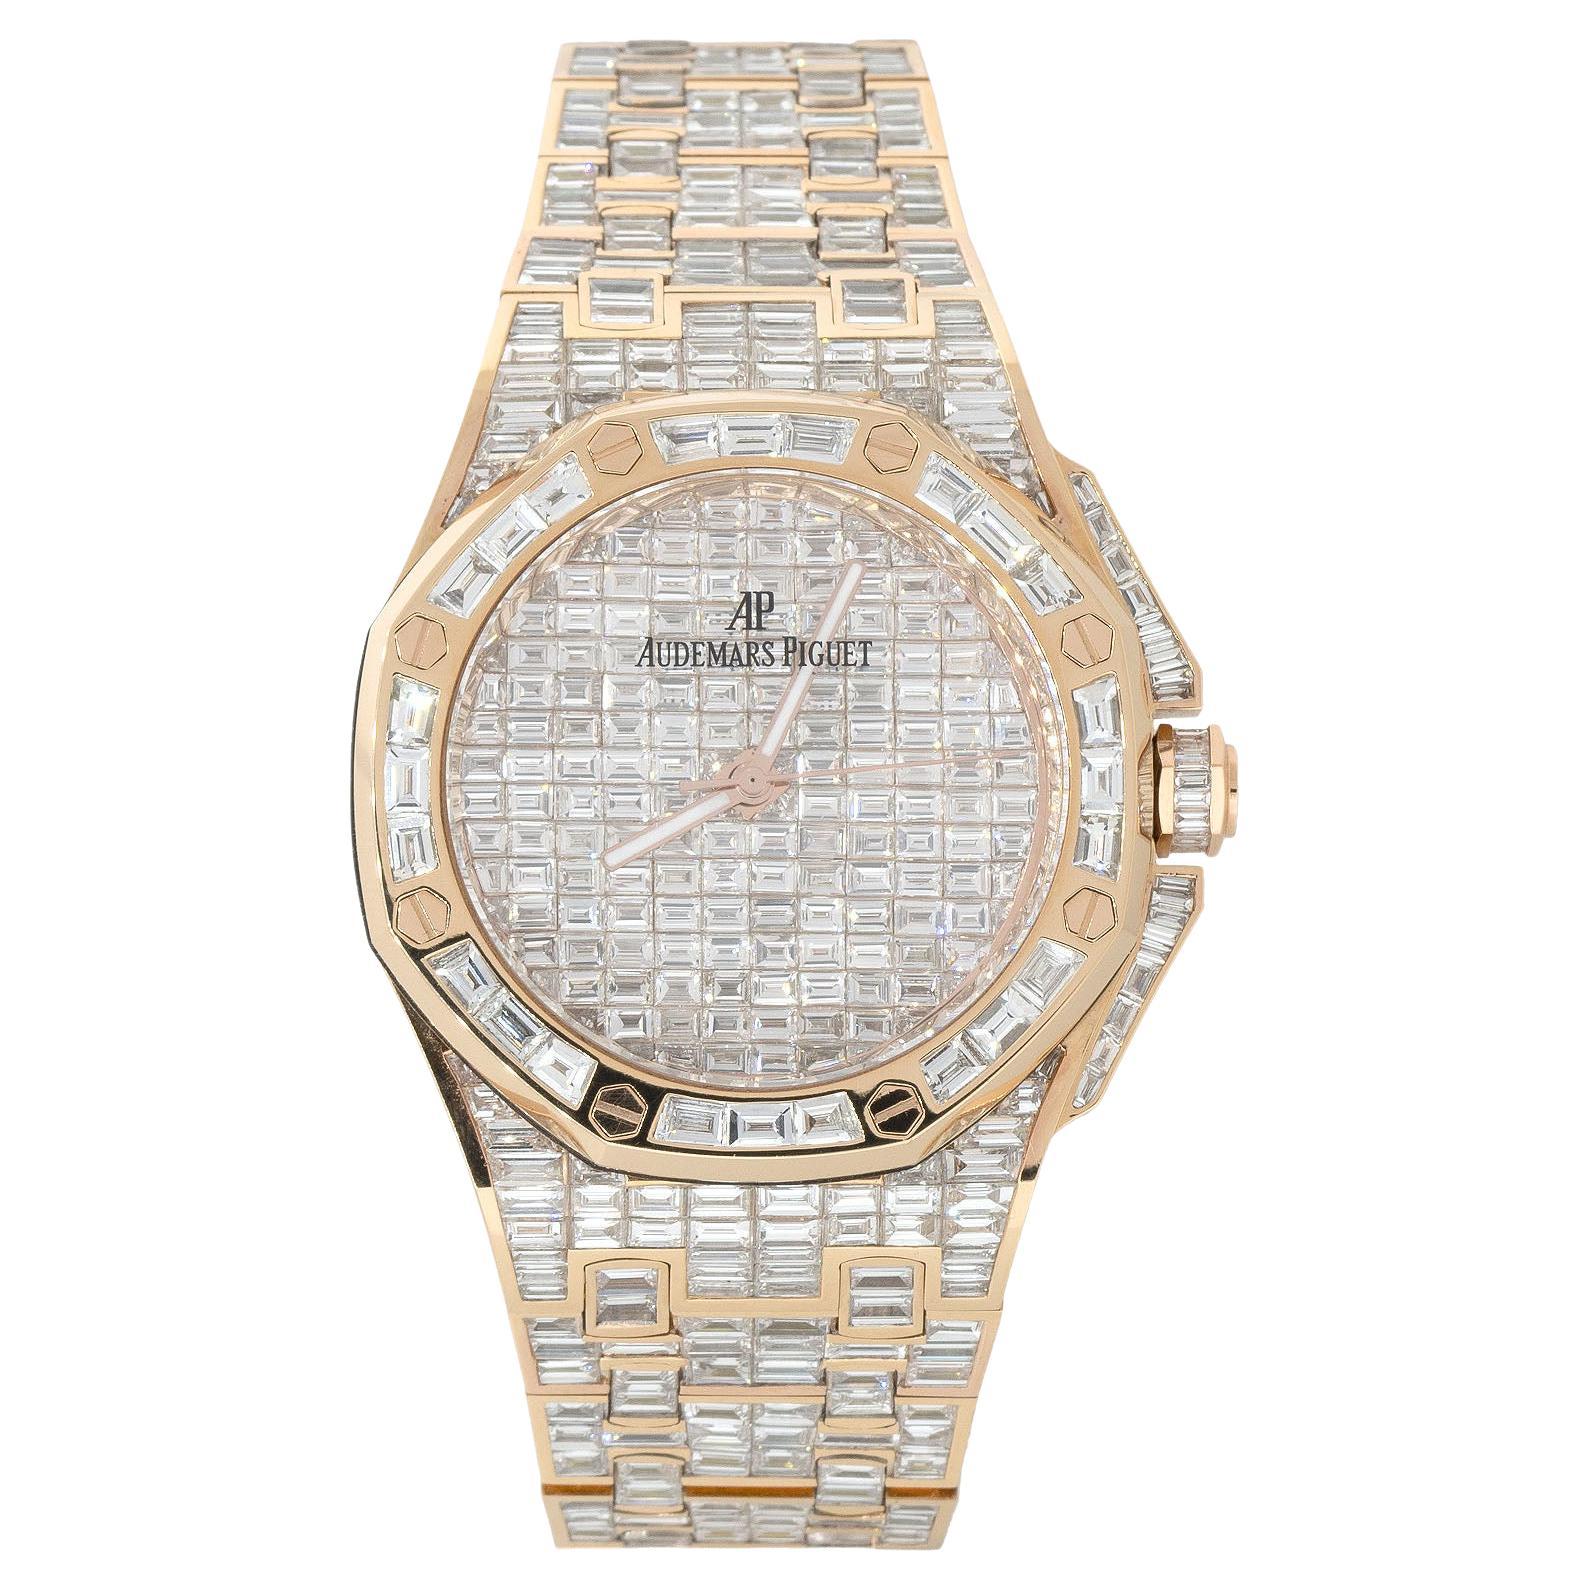 Audemars Piguet All Diamond Watch 18 Karat in Stock